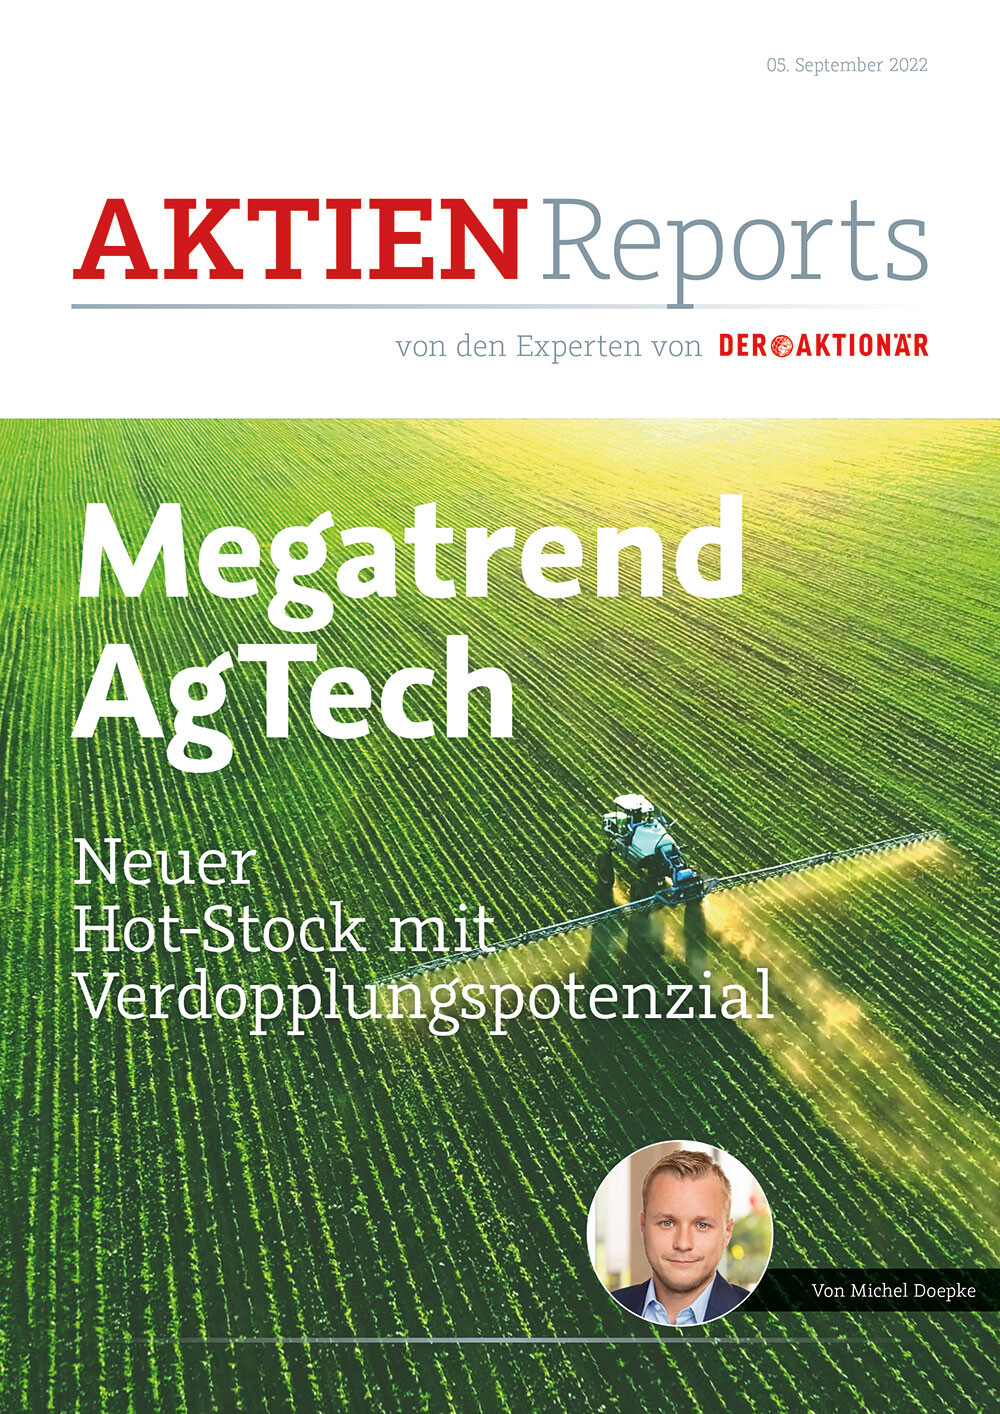 Sie wollen das Unternehmen kennenlernen? Dann sichern Sie sich jetzt den neuen Aktien-Report „Megatrend AgTech – neuer Hot-Stock mit Verdopplungspotenzial“.